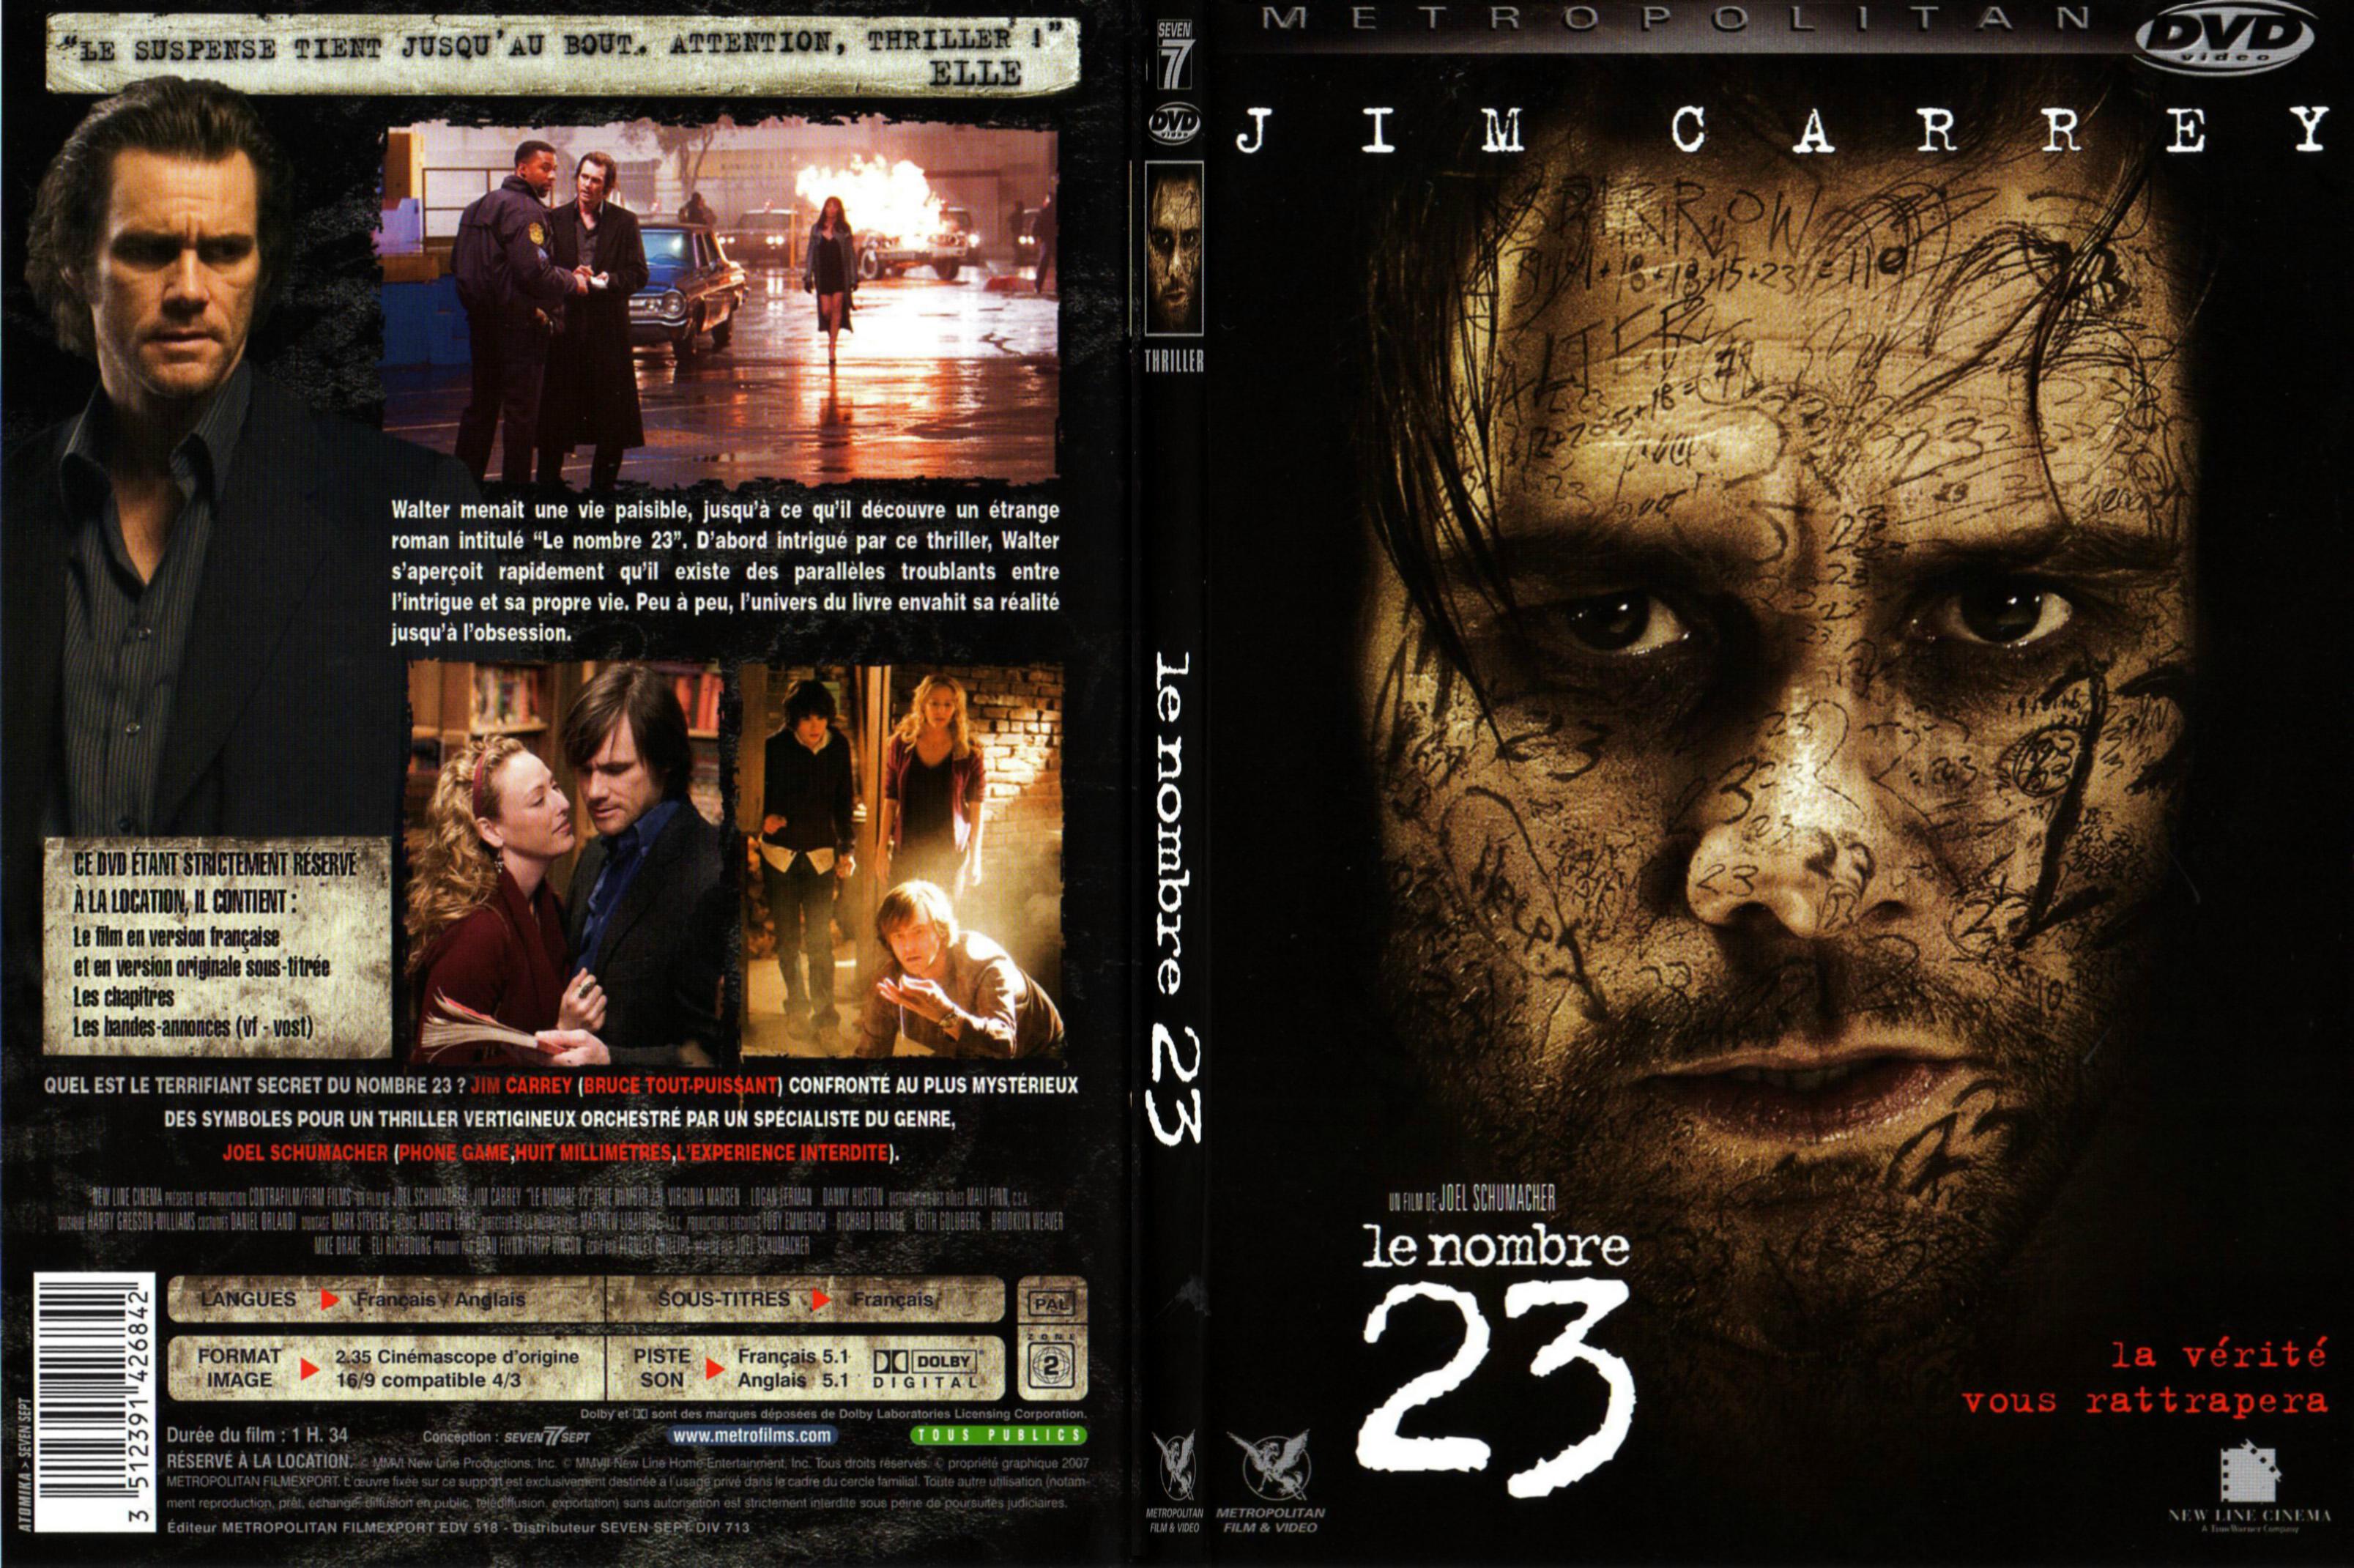 Jaquette DVD Le nombre 23 - SLIM